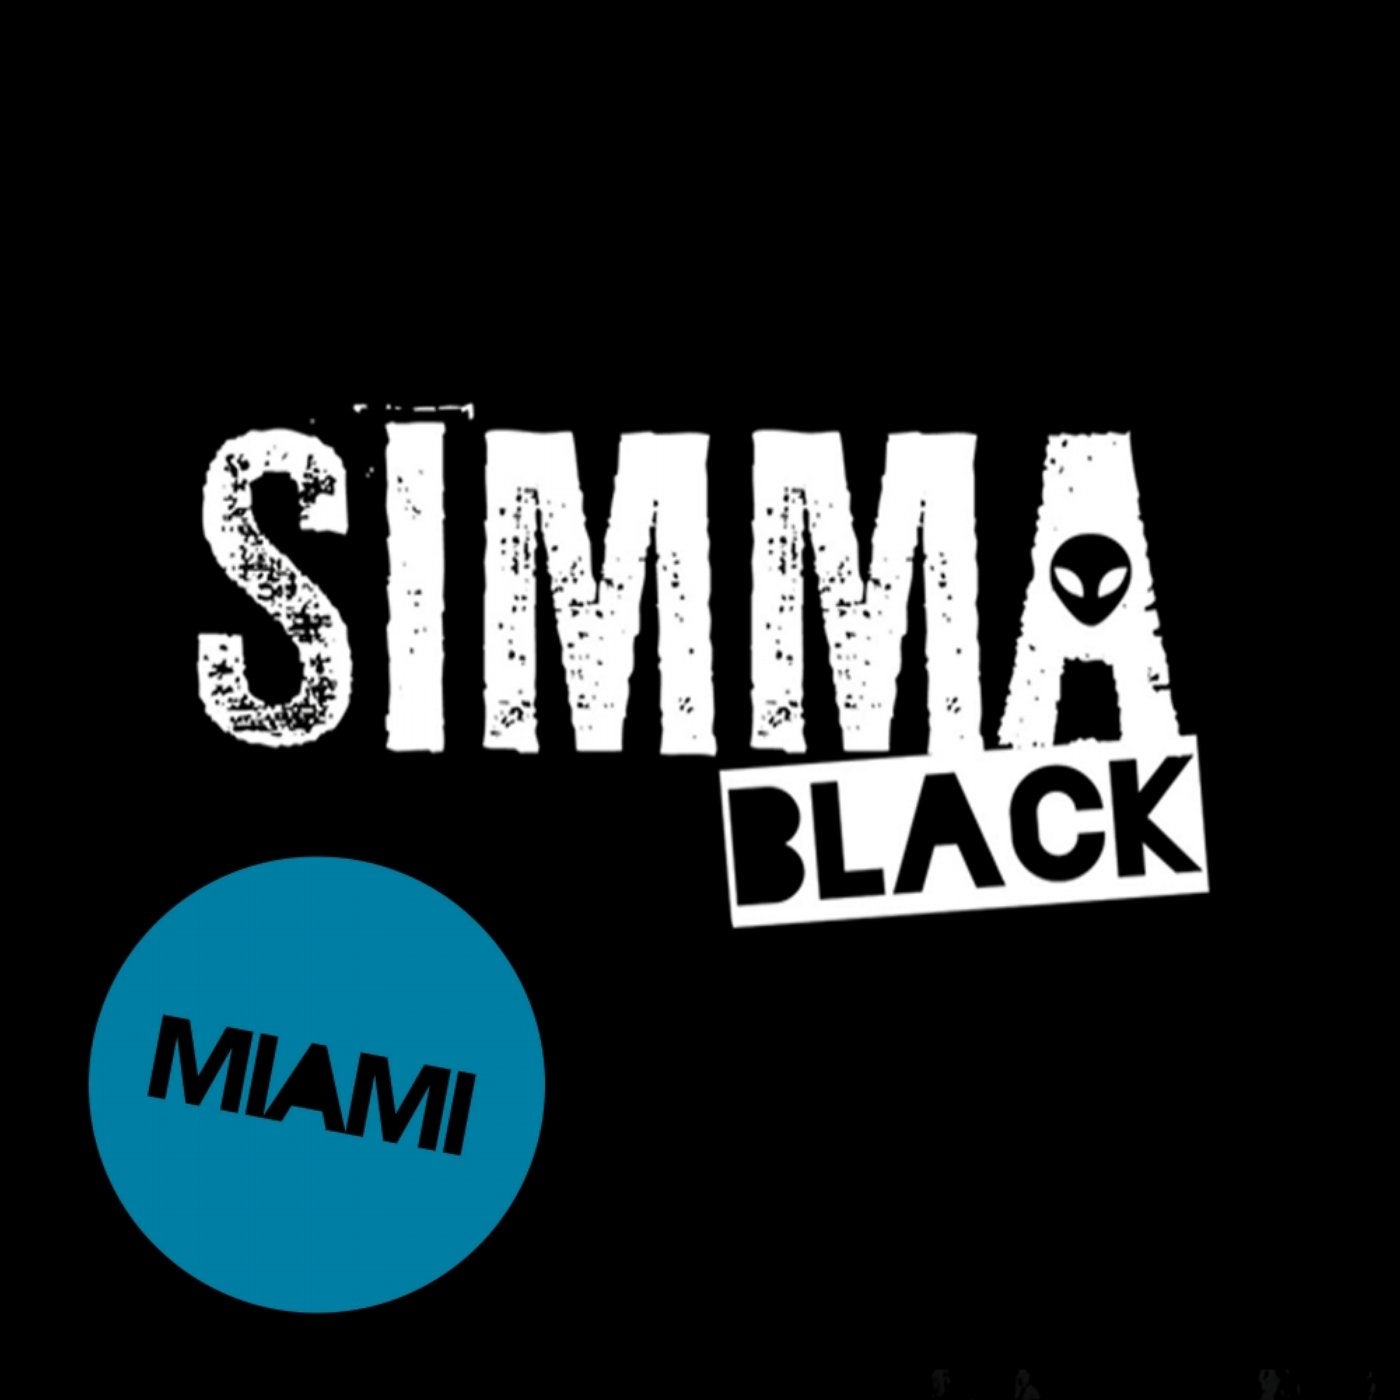 Simma Black presents Miami 2018